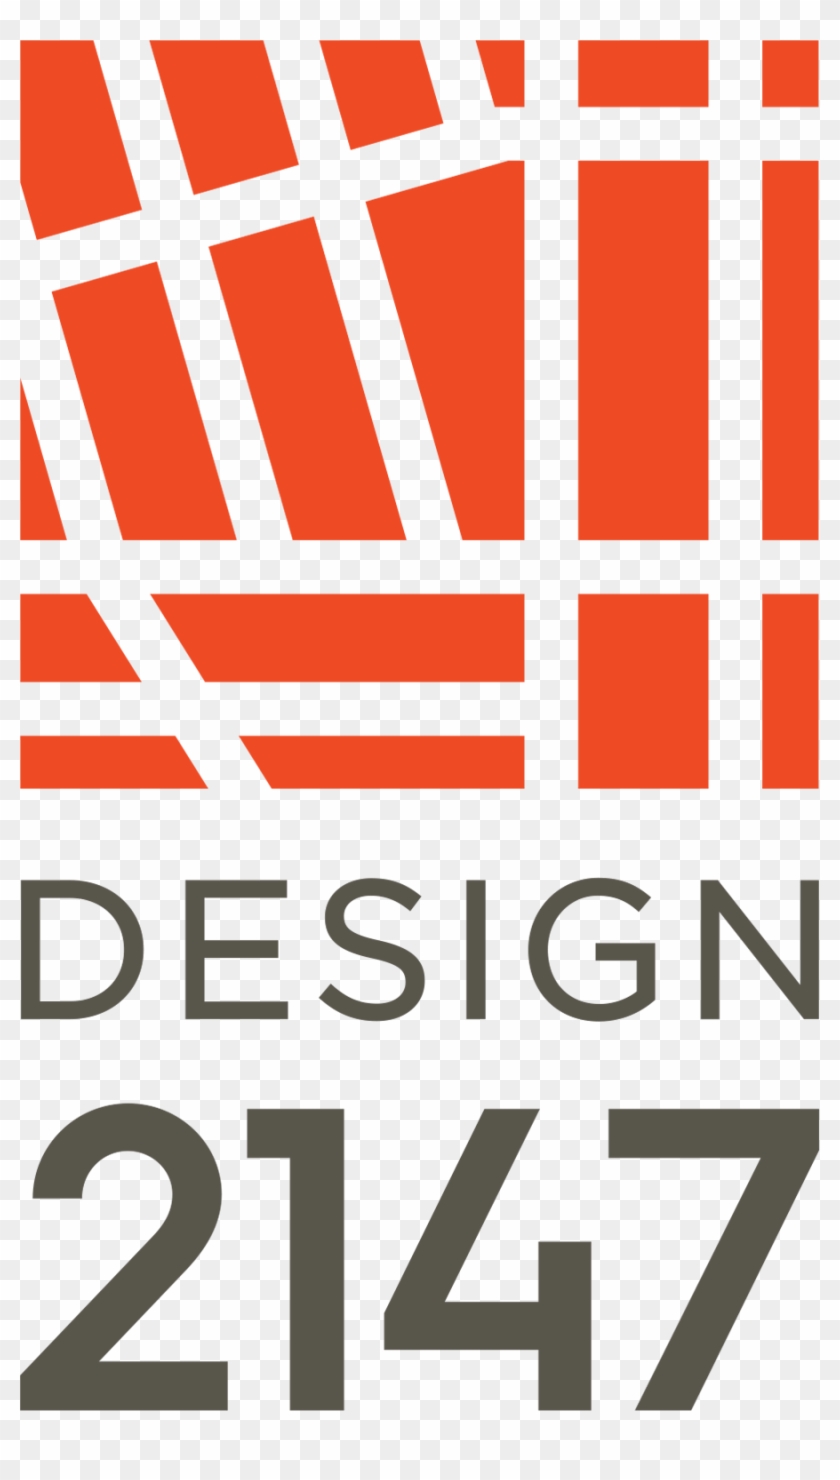 Design2147 - Design 2147, Ltd. #538745